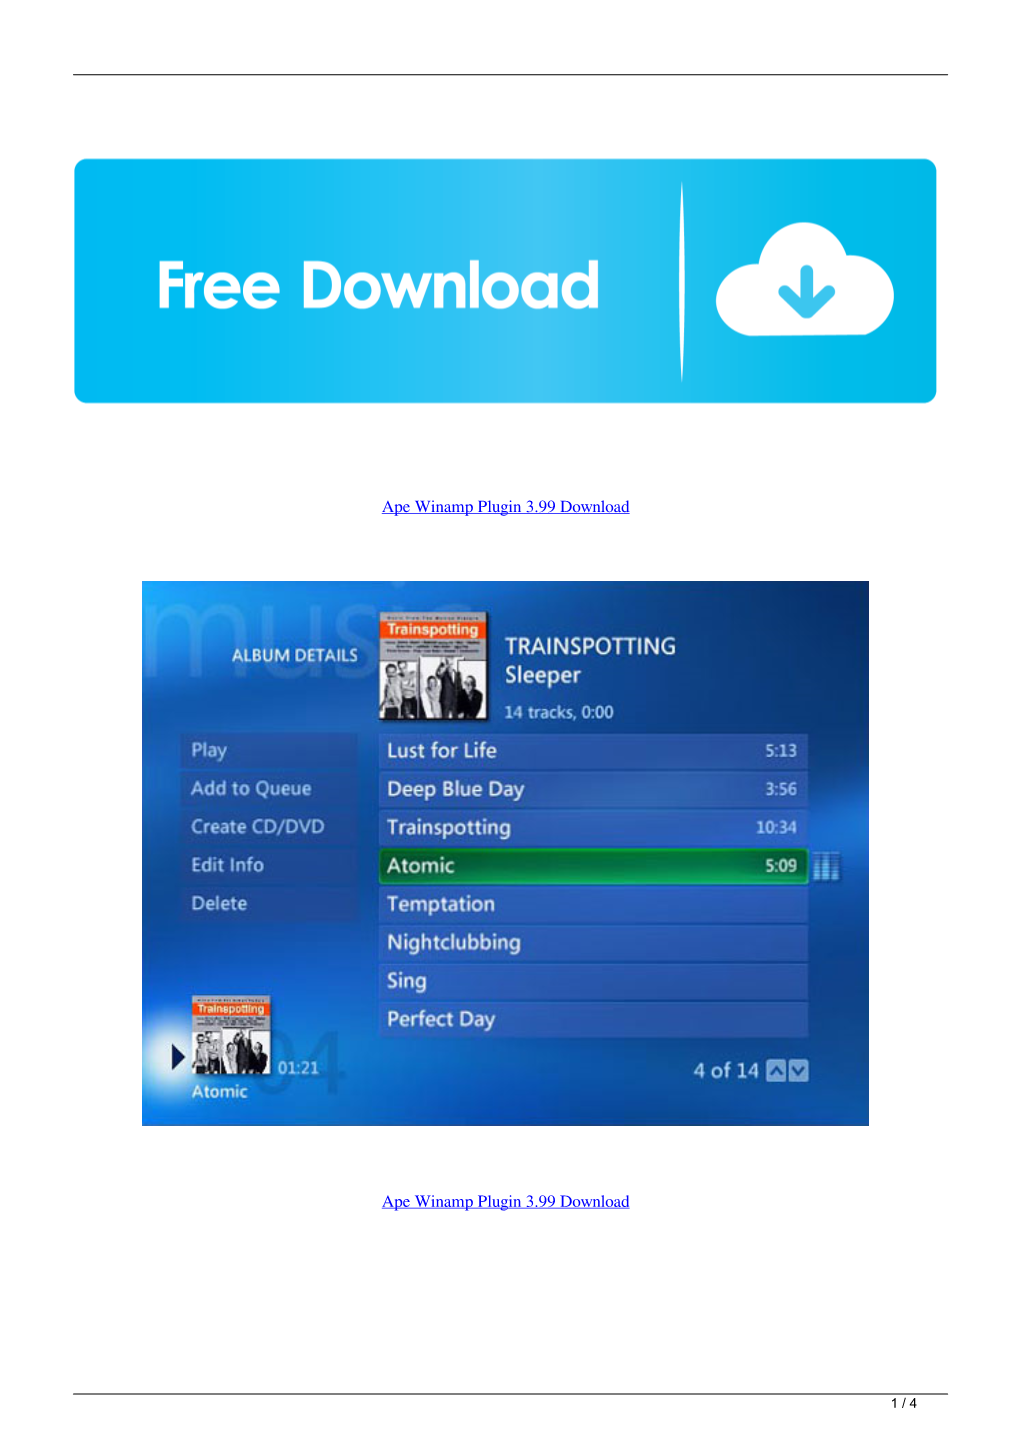 Ape Winamp Plugin 399 Download